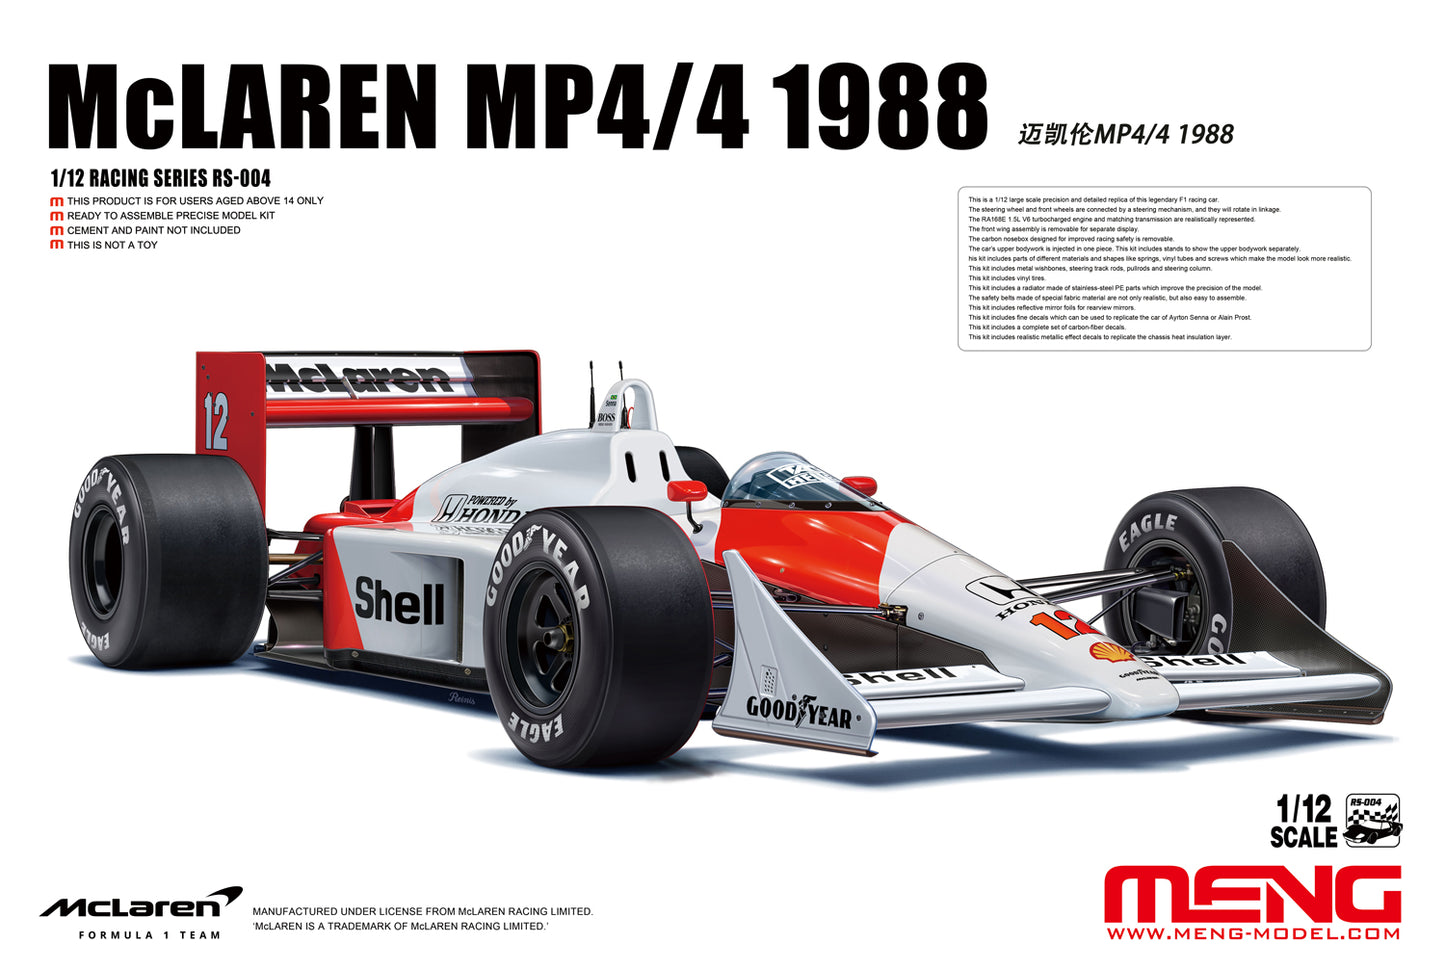 MCLAREN MP4/4 HONDA - MARLBORO - F1 1988